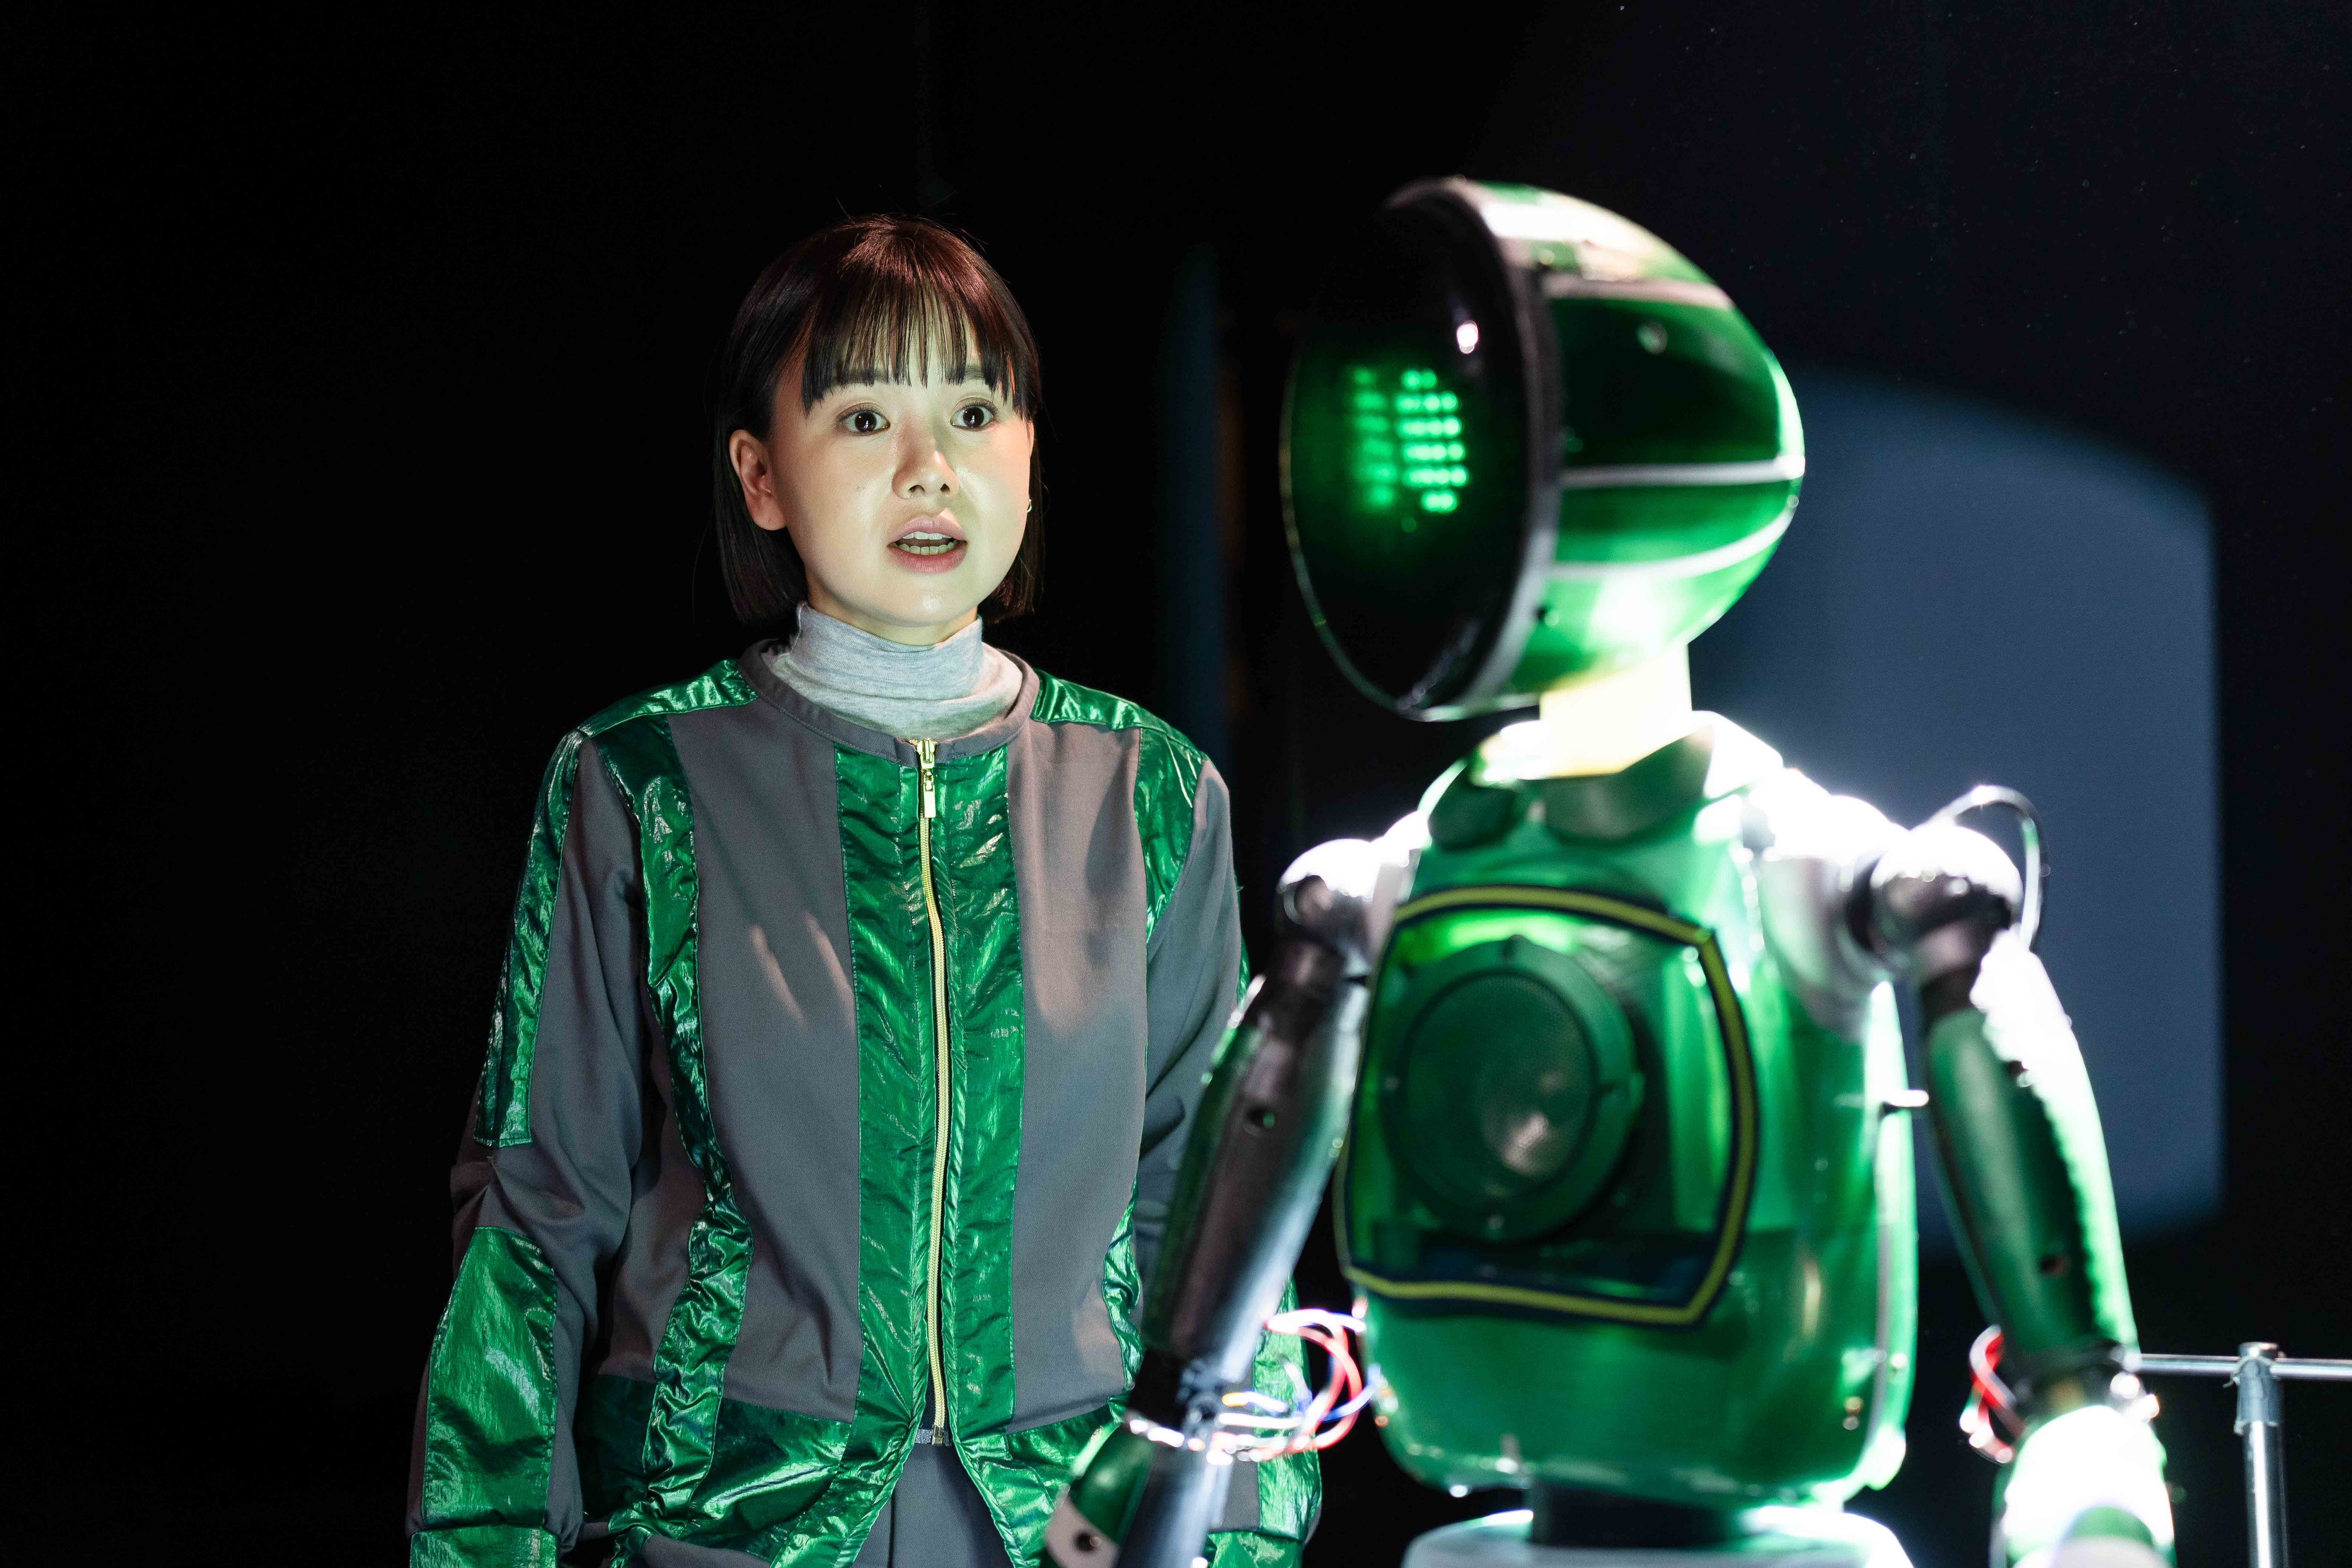 연극 ‘천 개의 파랑’에 등장하는 로봇 배우 ‘콜리’. 국립극단 제공